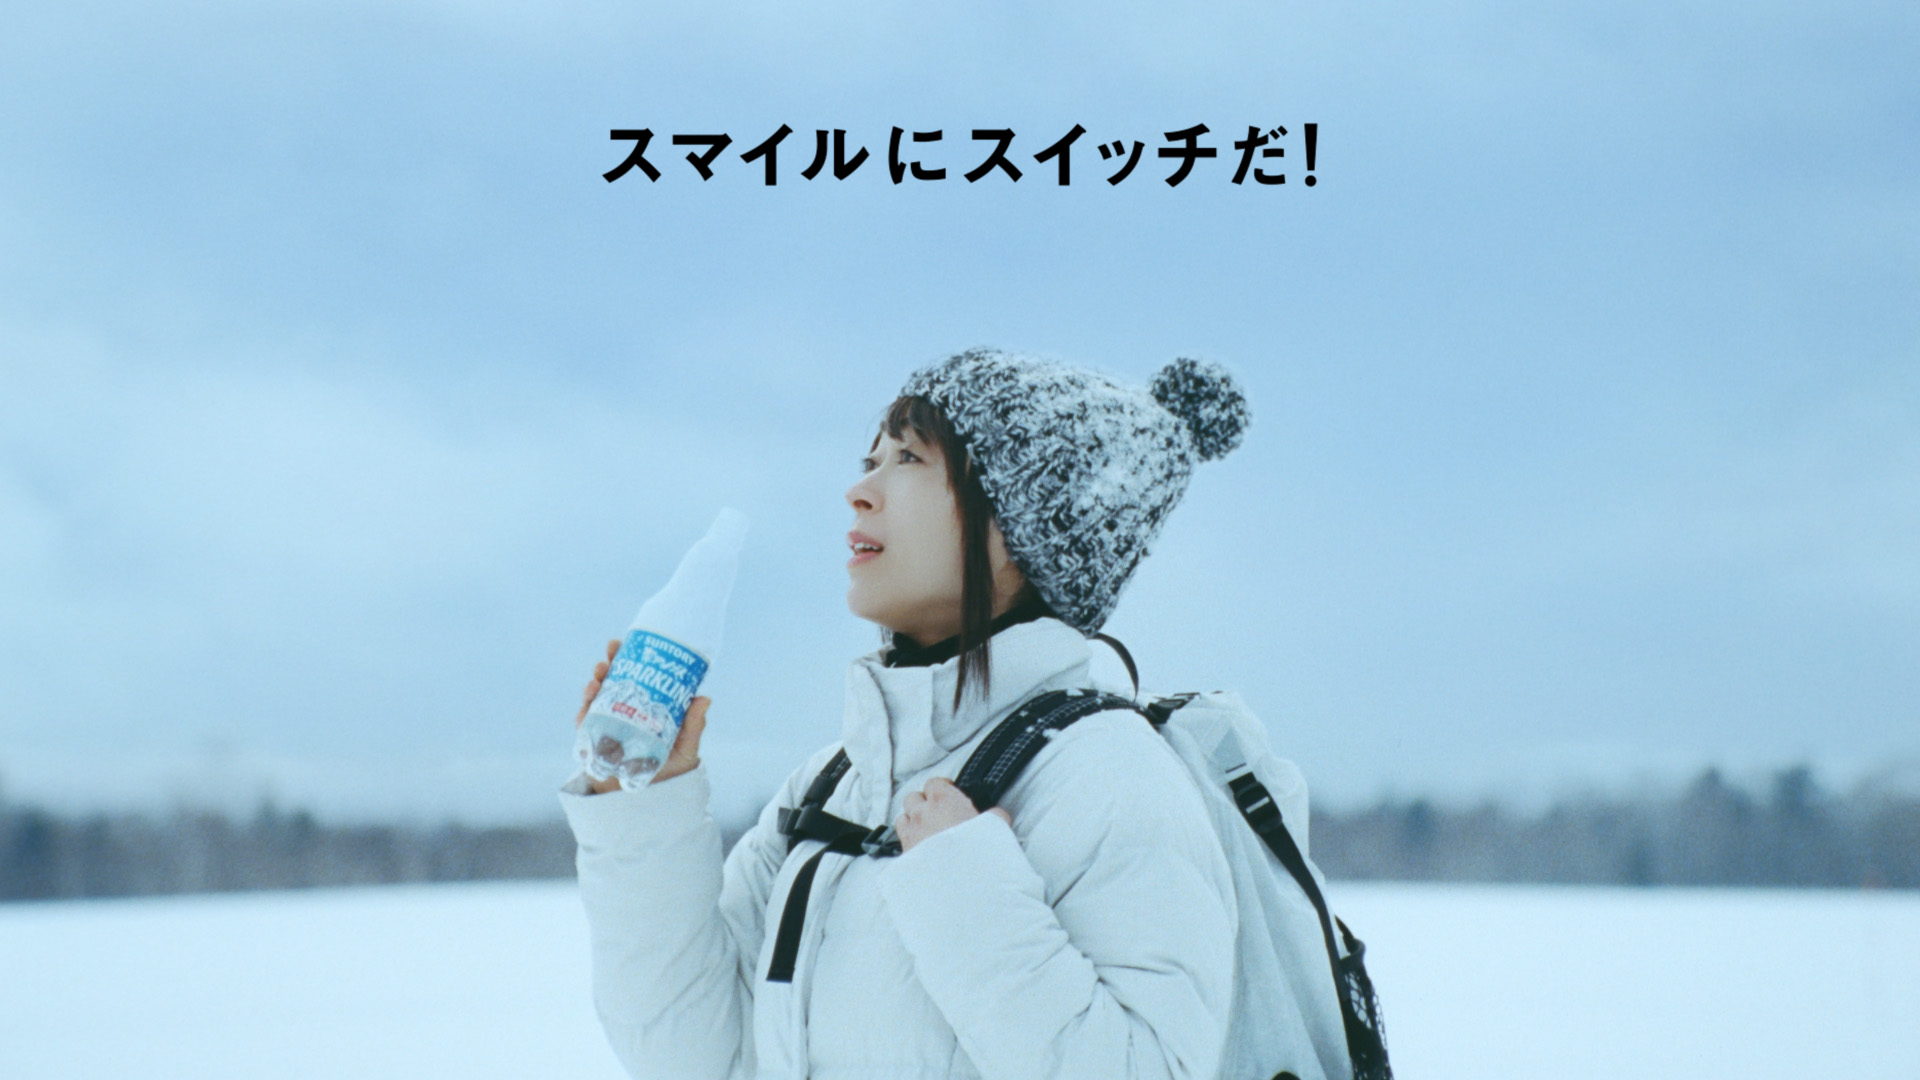 宇多田ヒカル出演サントリー新cmの舞台は大雪原 周年記念の新曲をバックに ニンゲンらしくやってる Pouch ポーチ